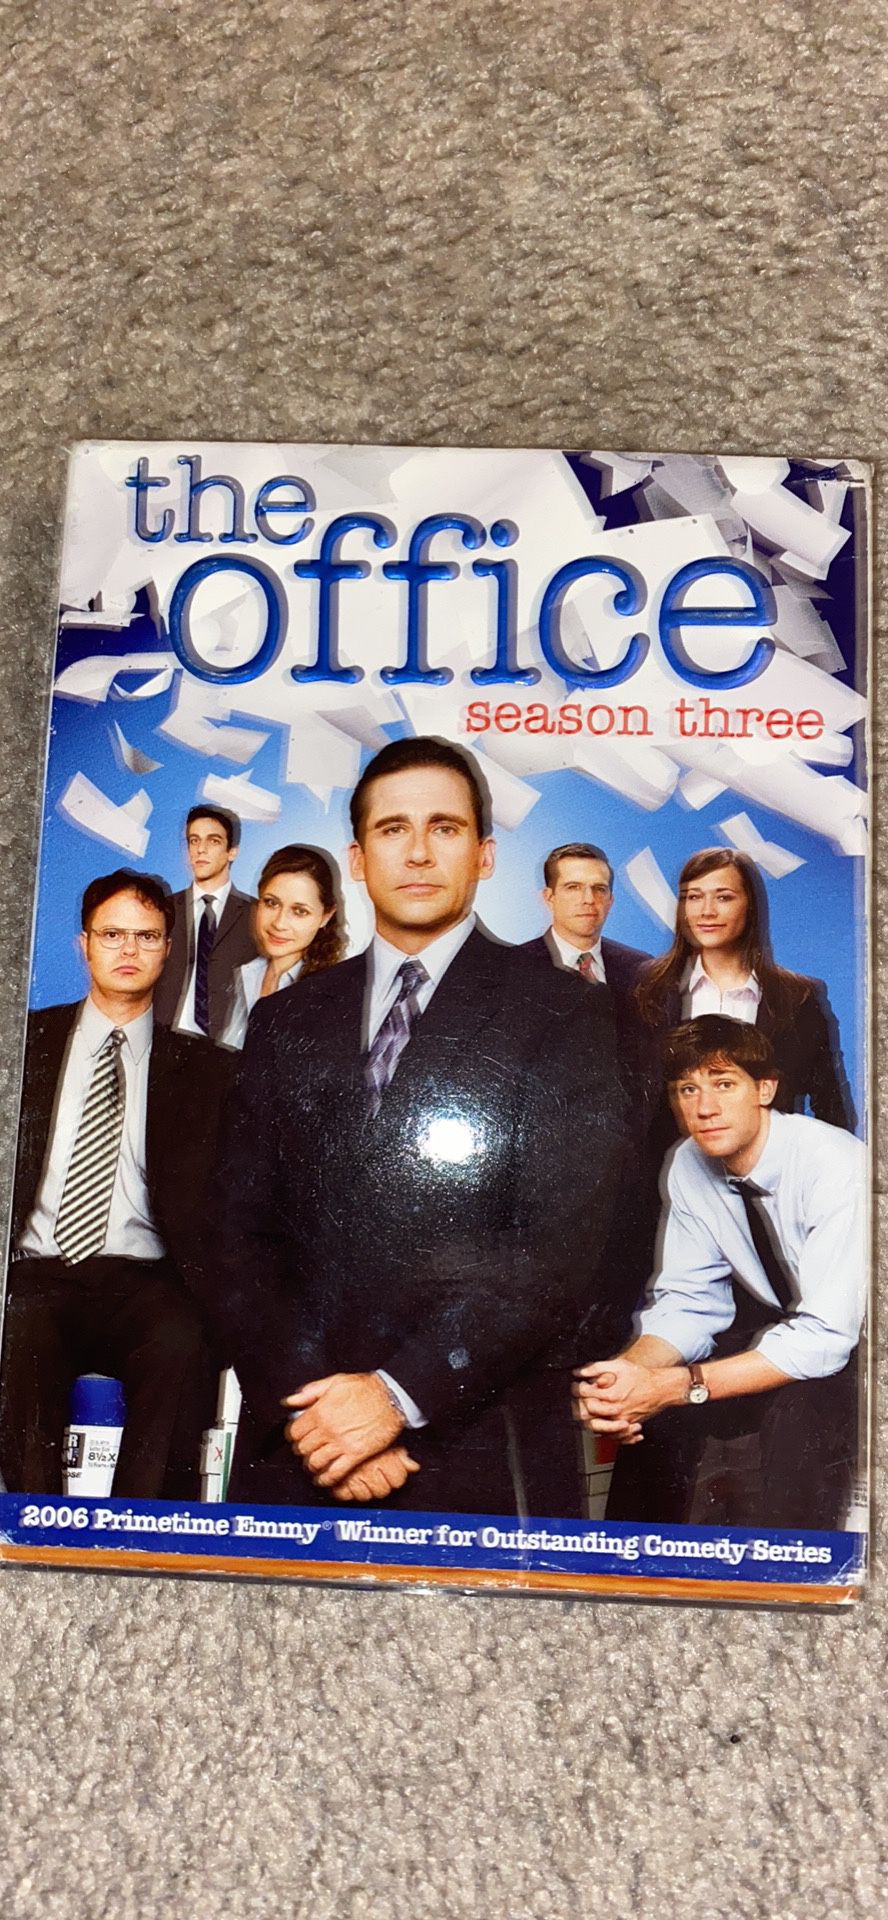 The office season 3